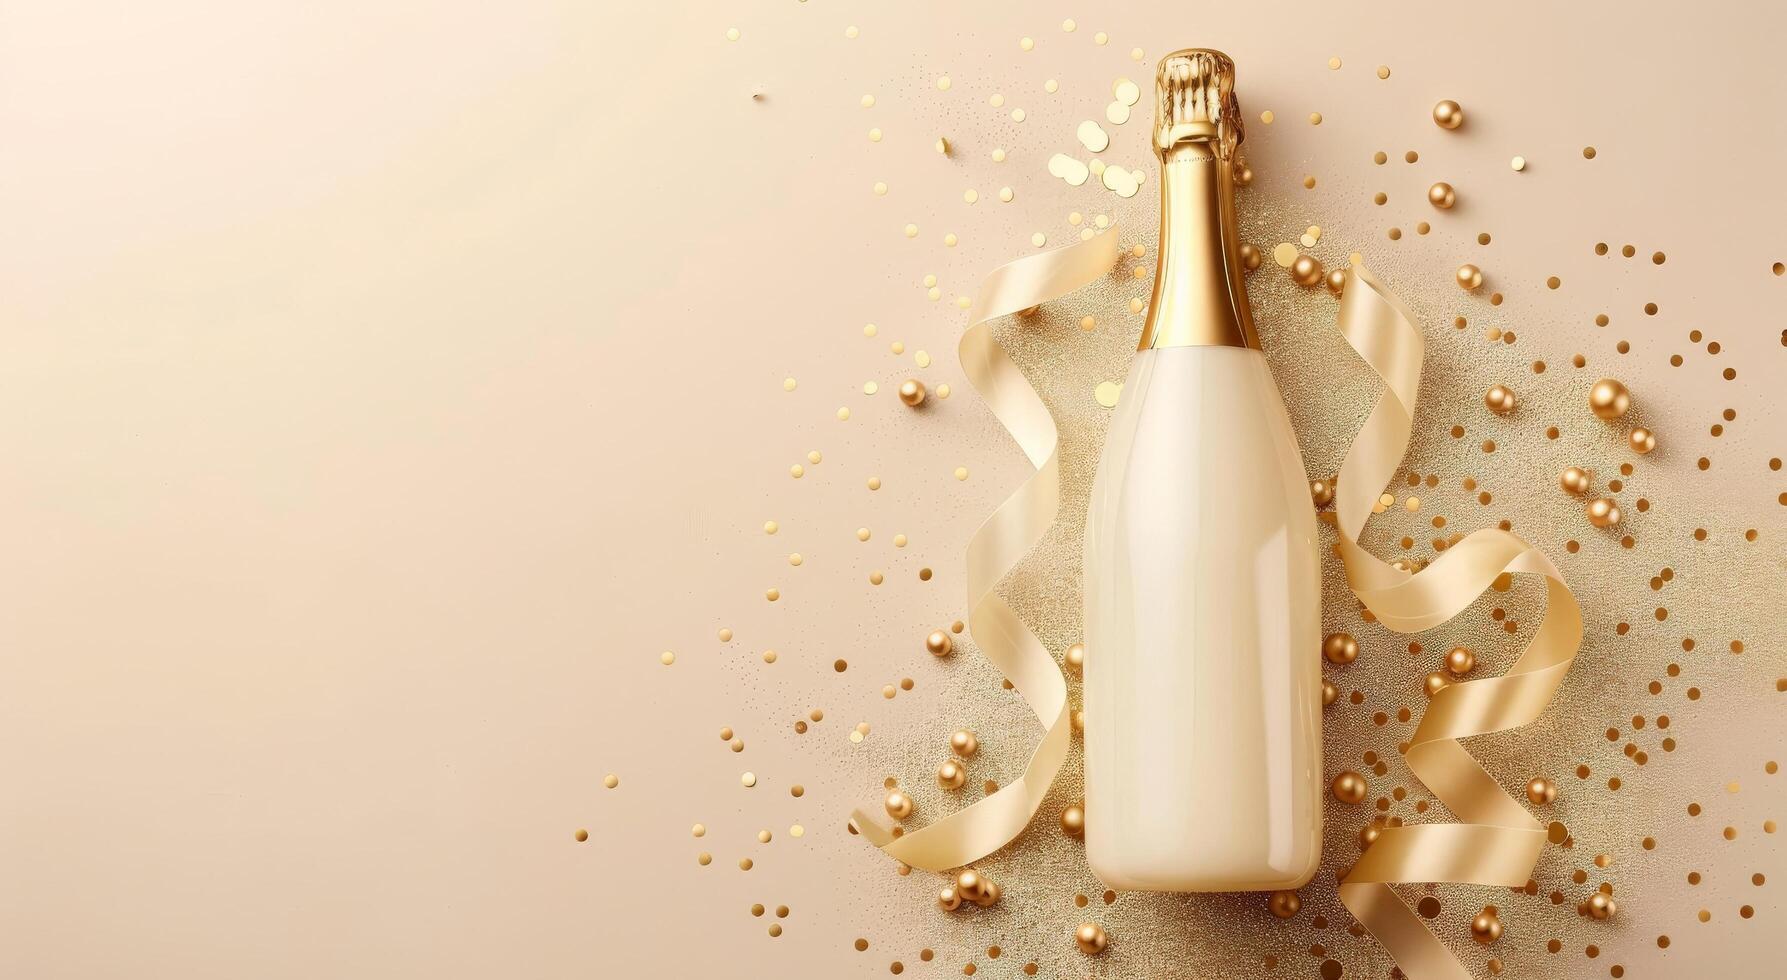 Champagne fles omringd door confetti en slingers foto